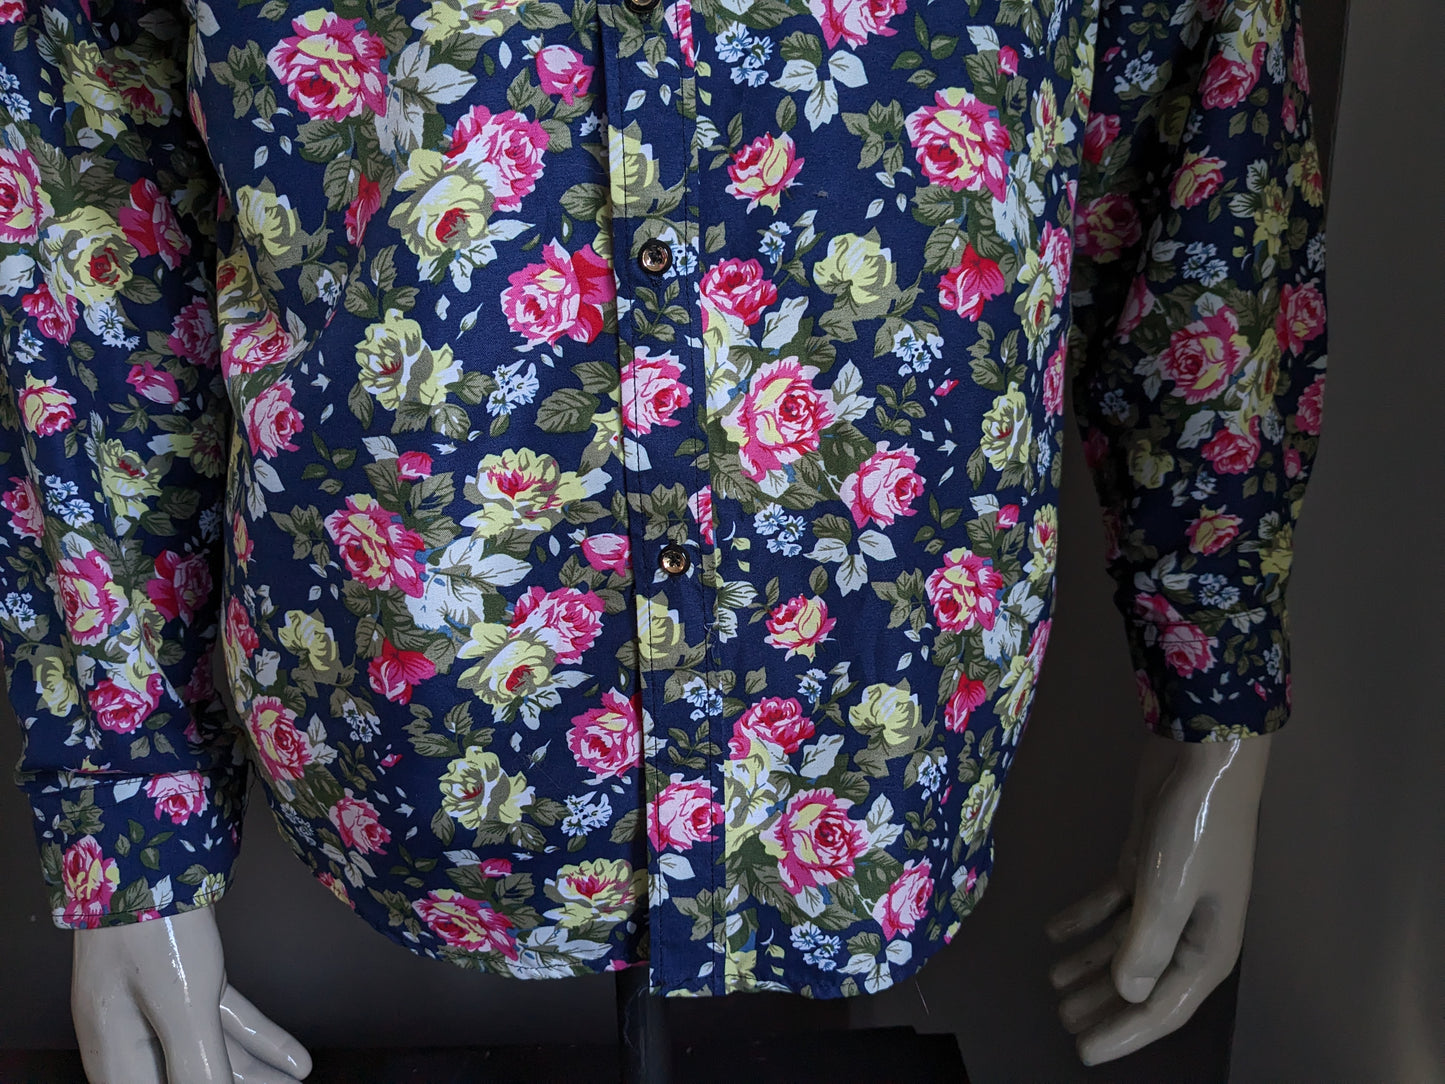 Camisa de estampado sin marca. Flores verdes rosas azules estampado. Talla L.